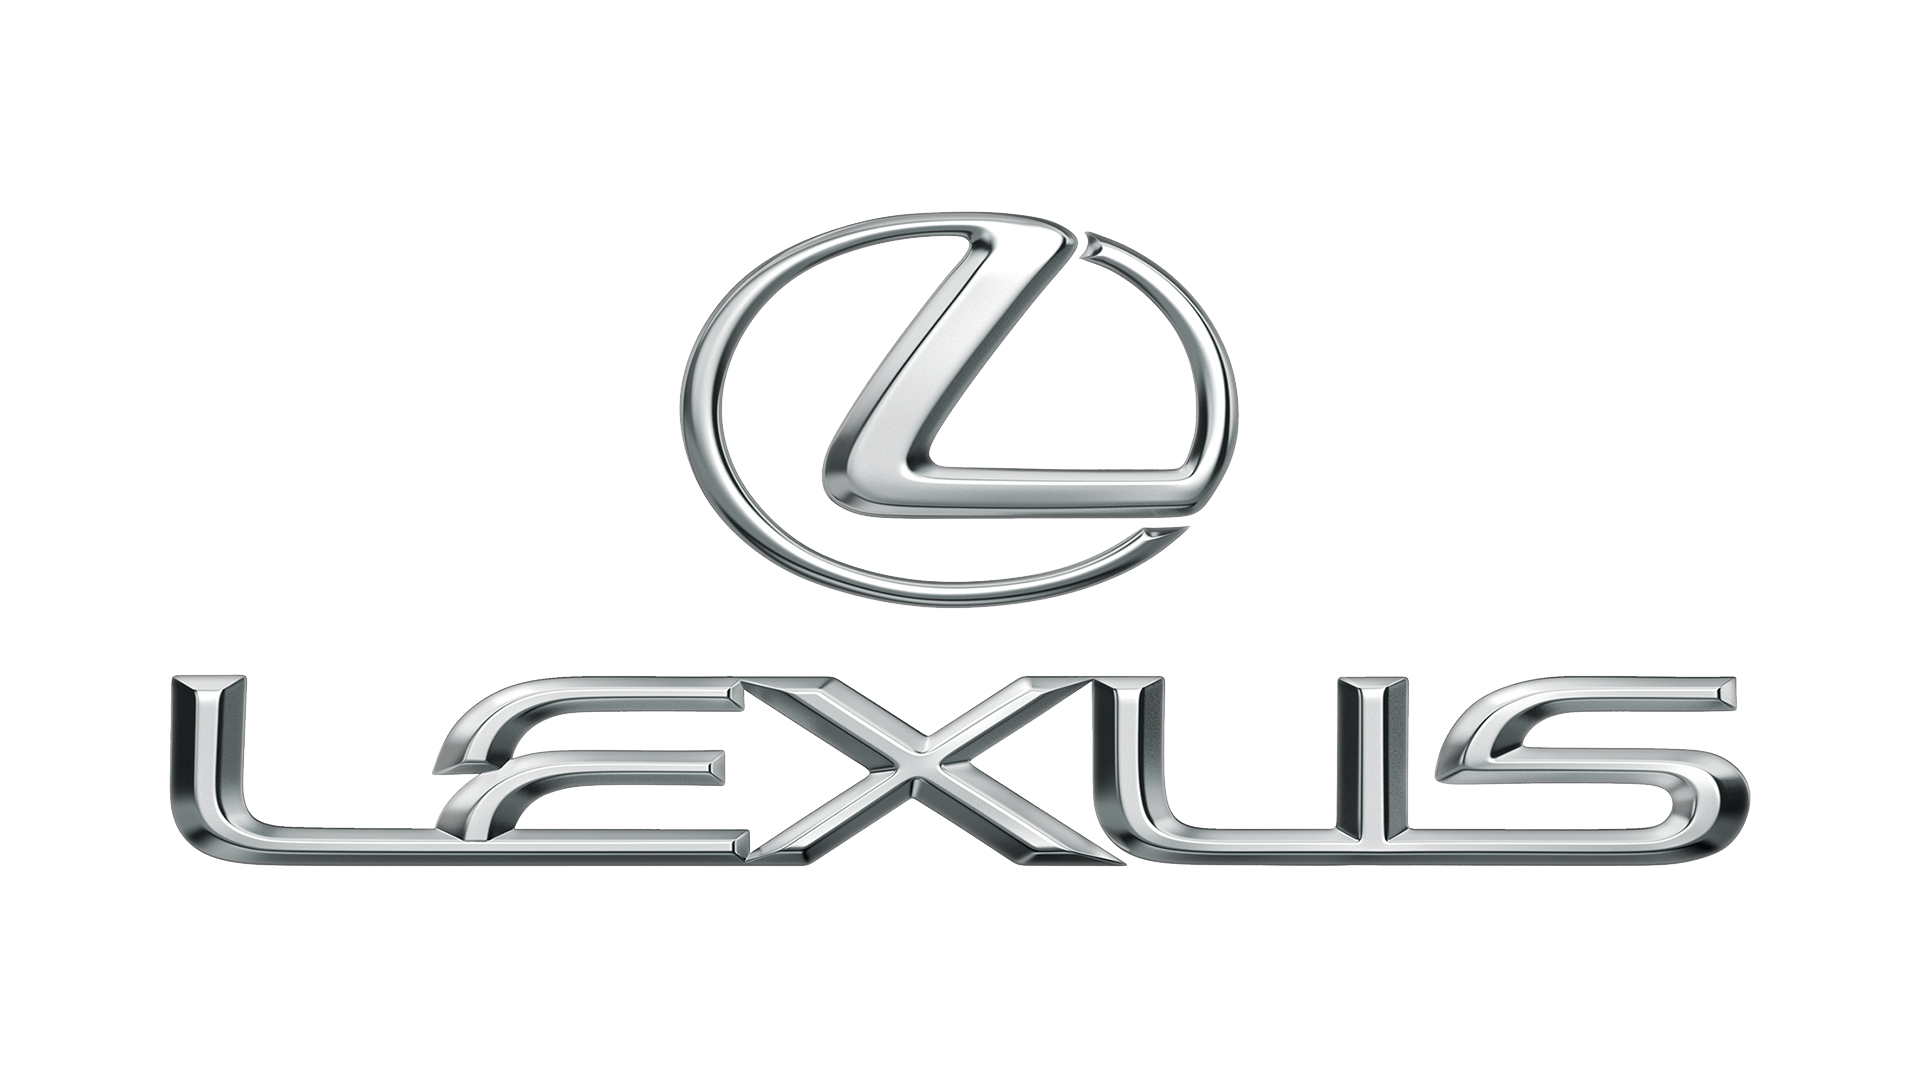 Lexus – Logos Download